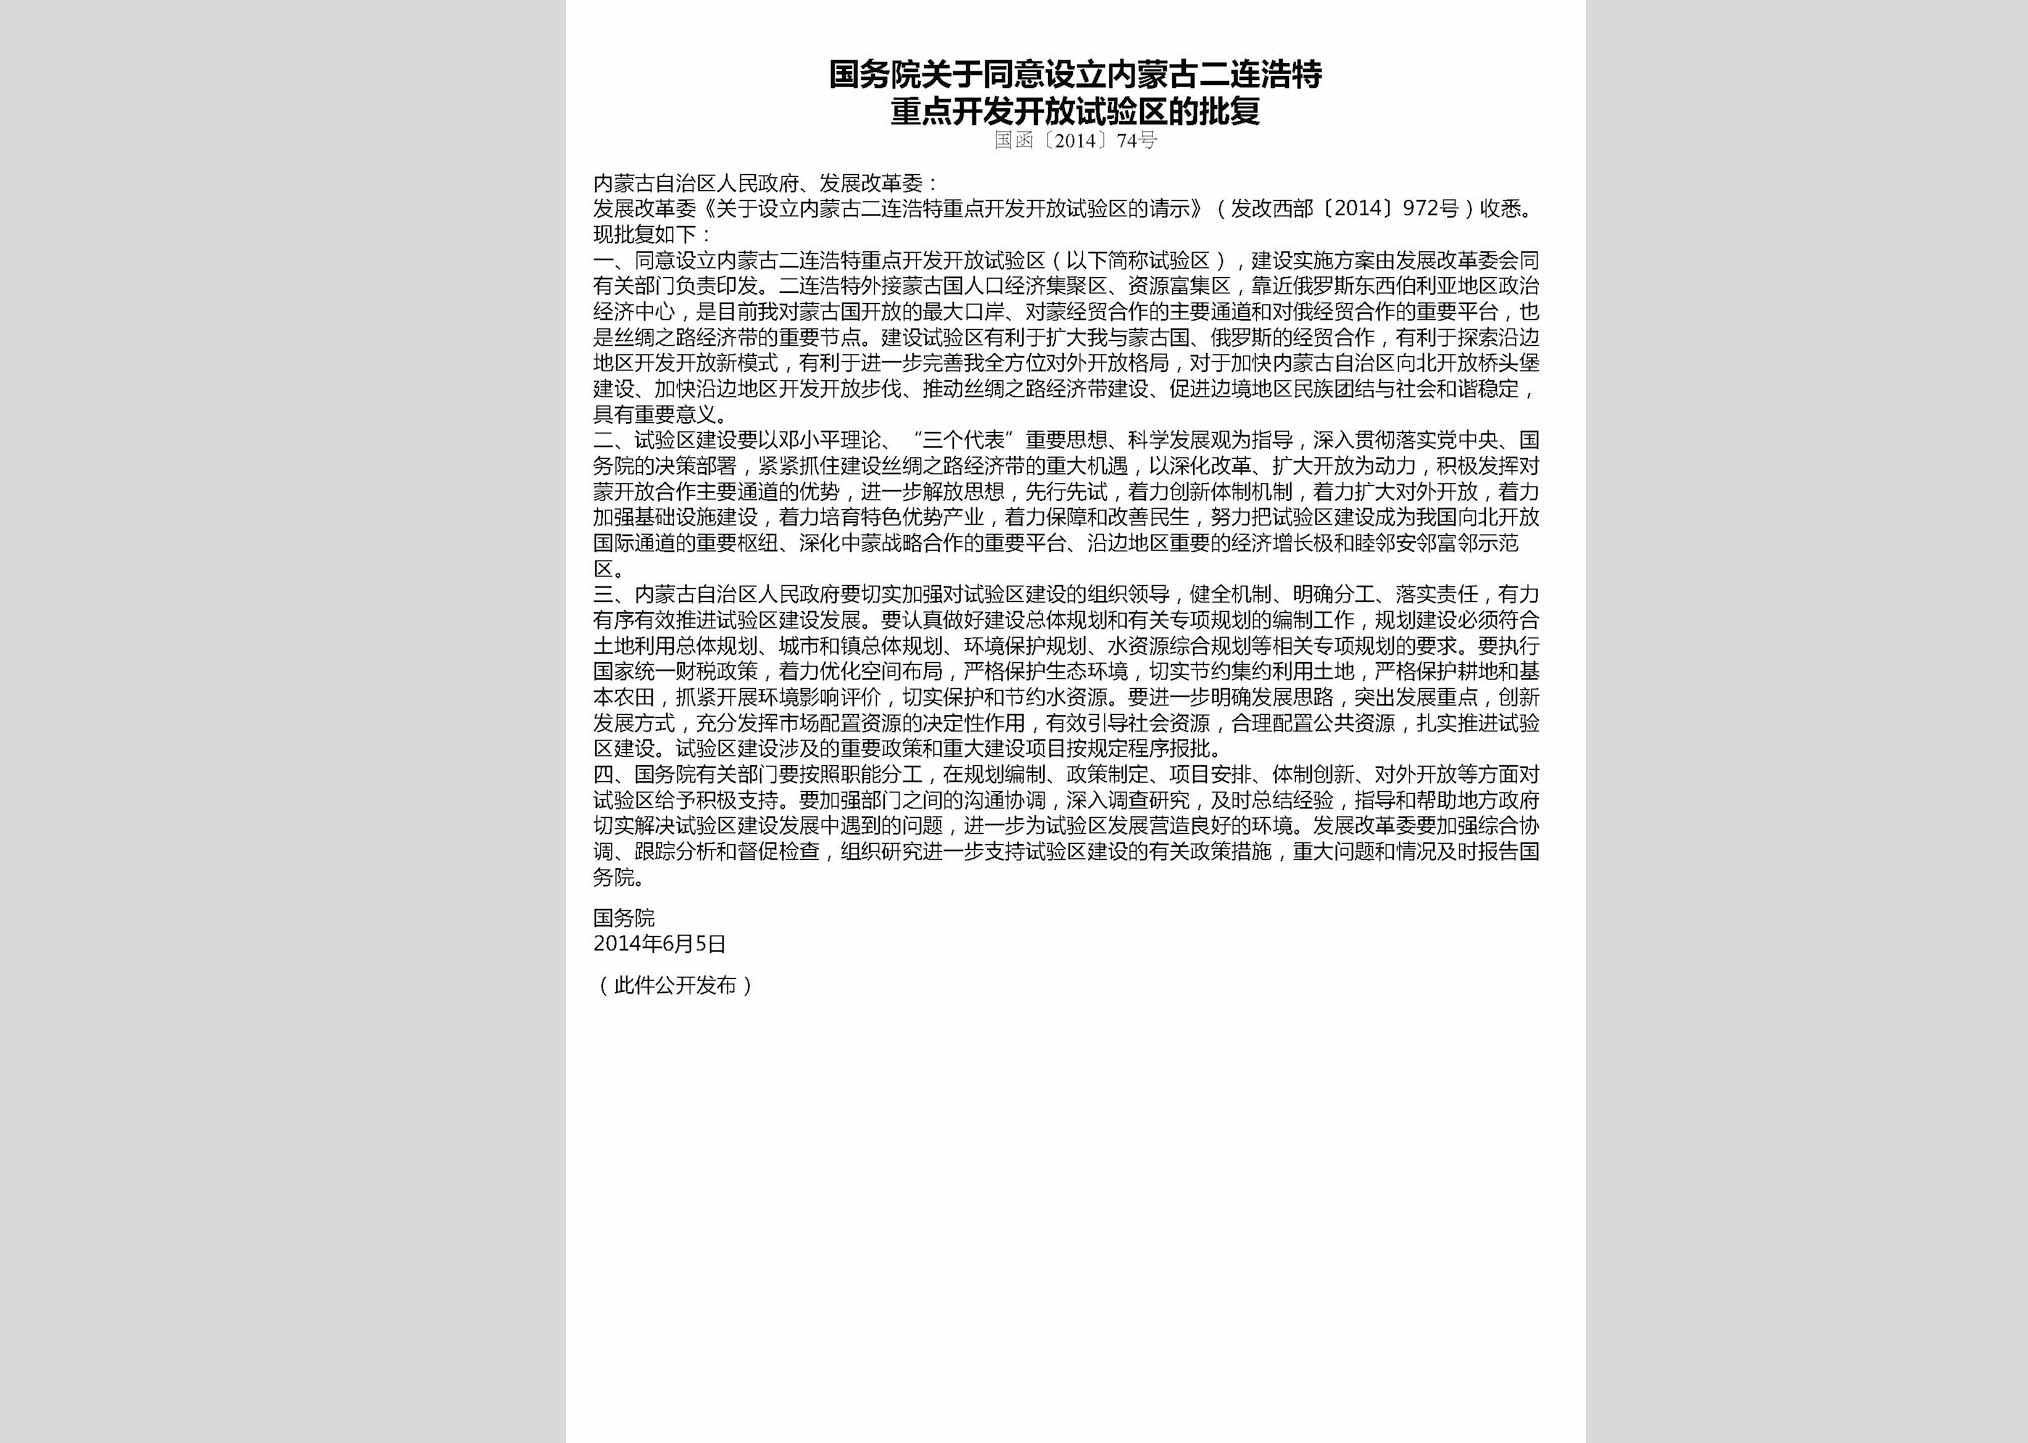 国函[2014]74号：国务院关于同意设立内蒙古二连浩特重点开发开放试验区的批复